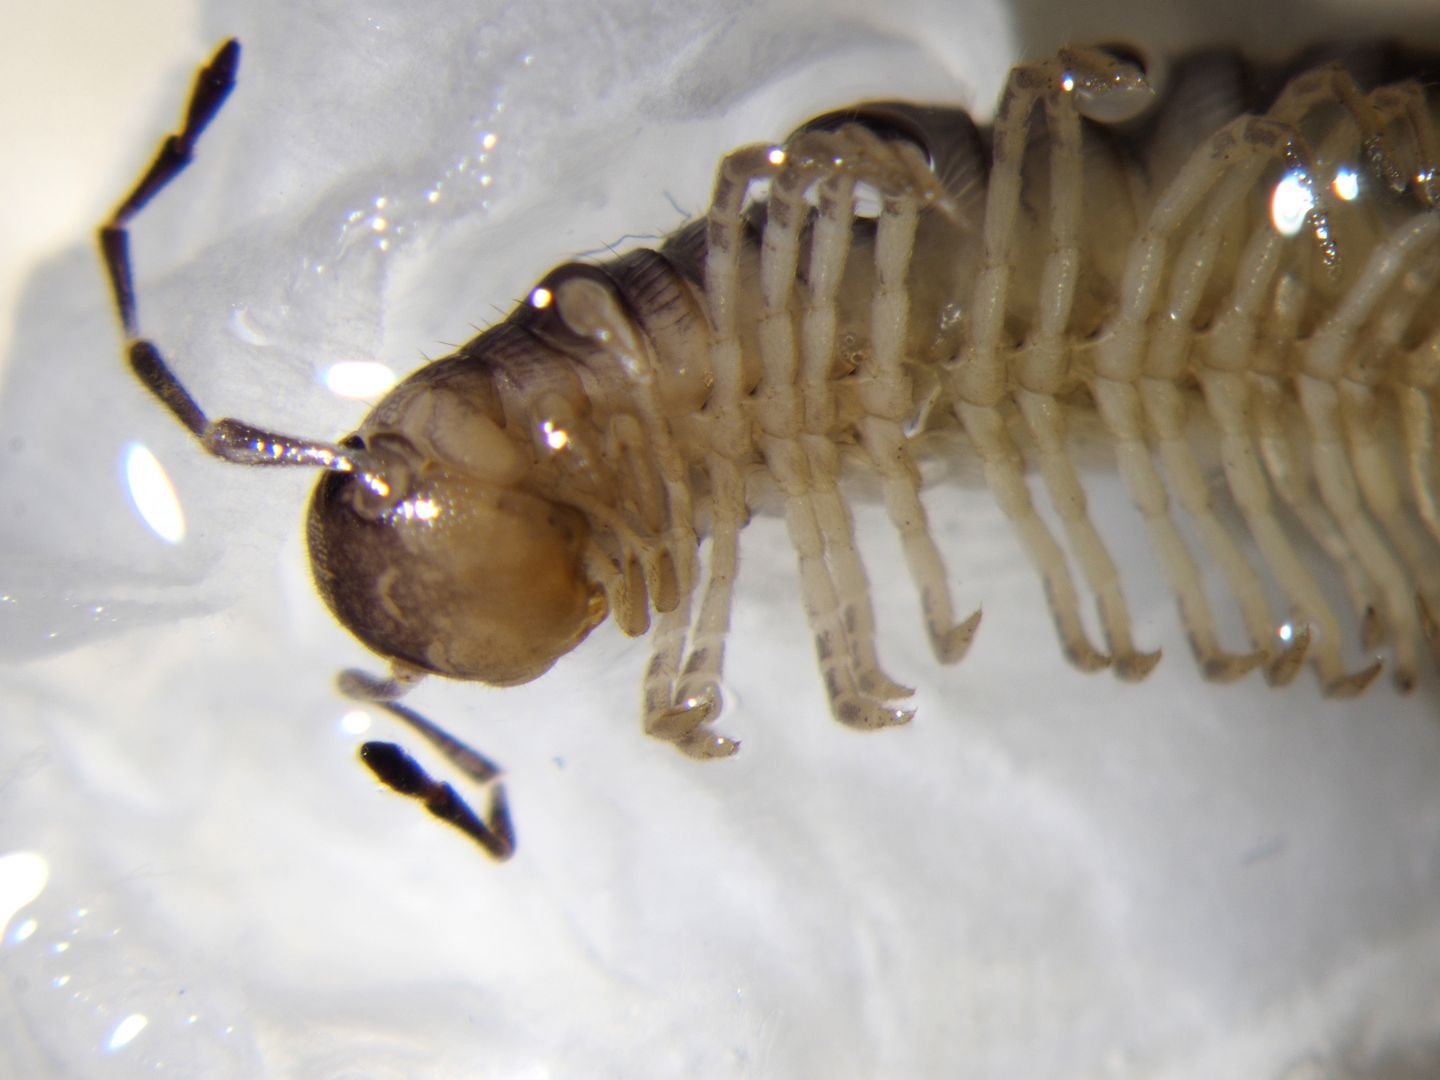 Identificazione diplopode trovato in galleria artificiale Trieste